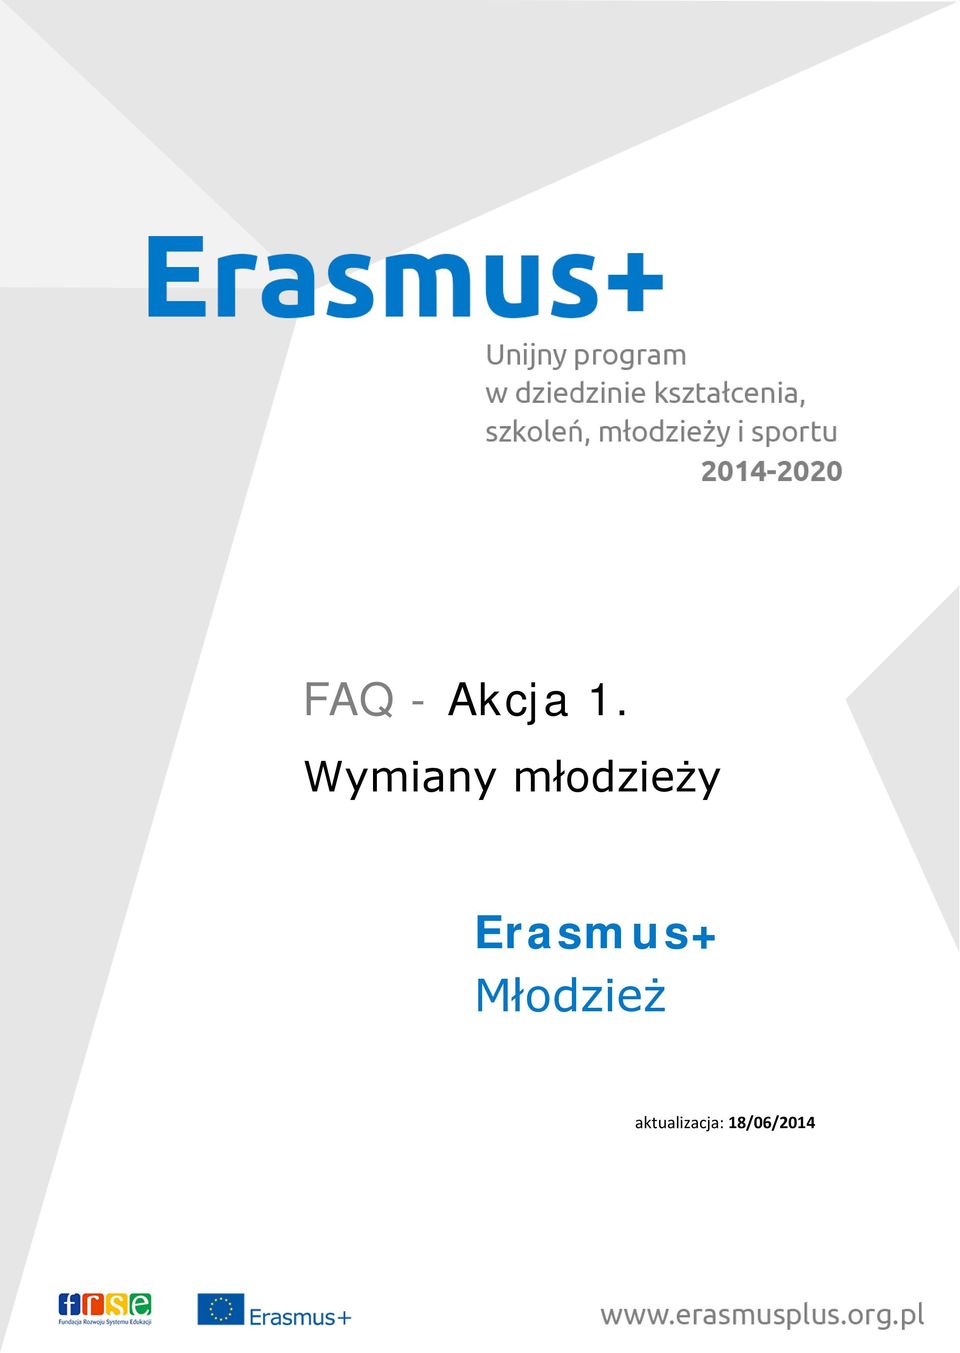 Erasmus+ Młodzież